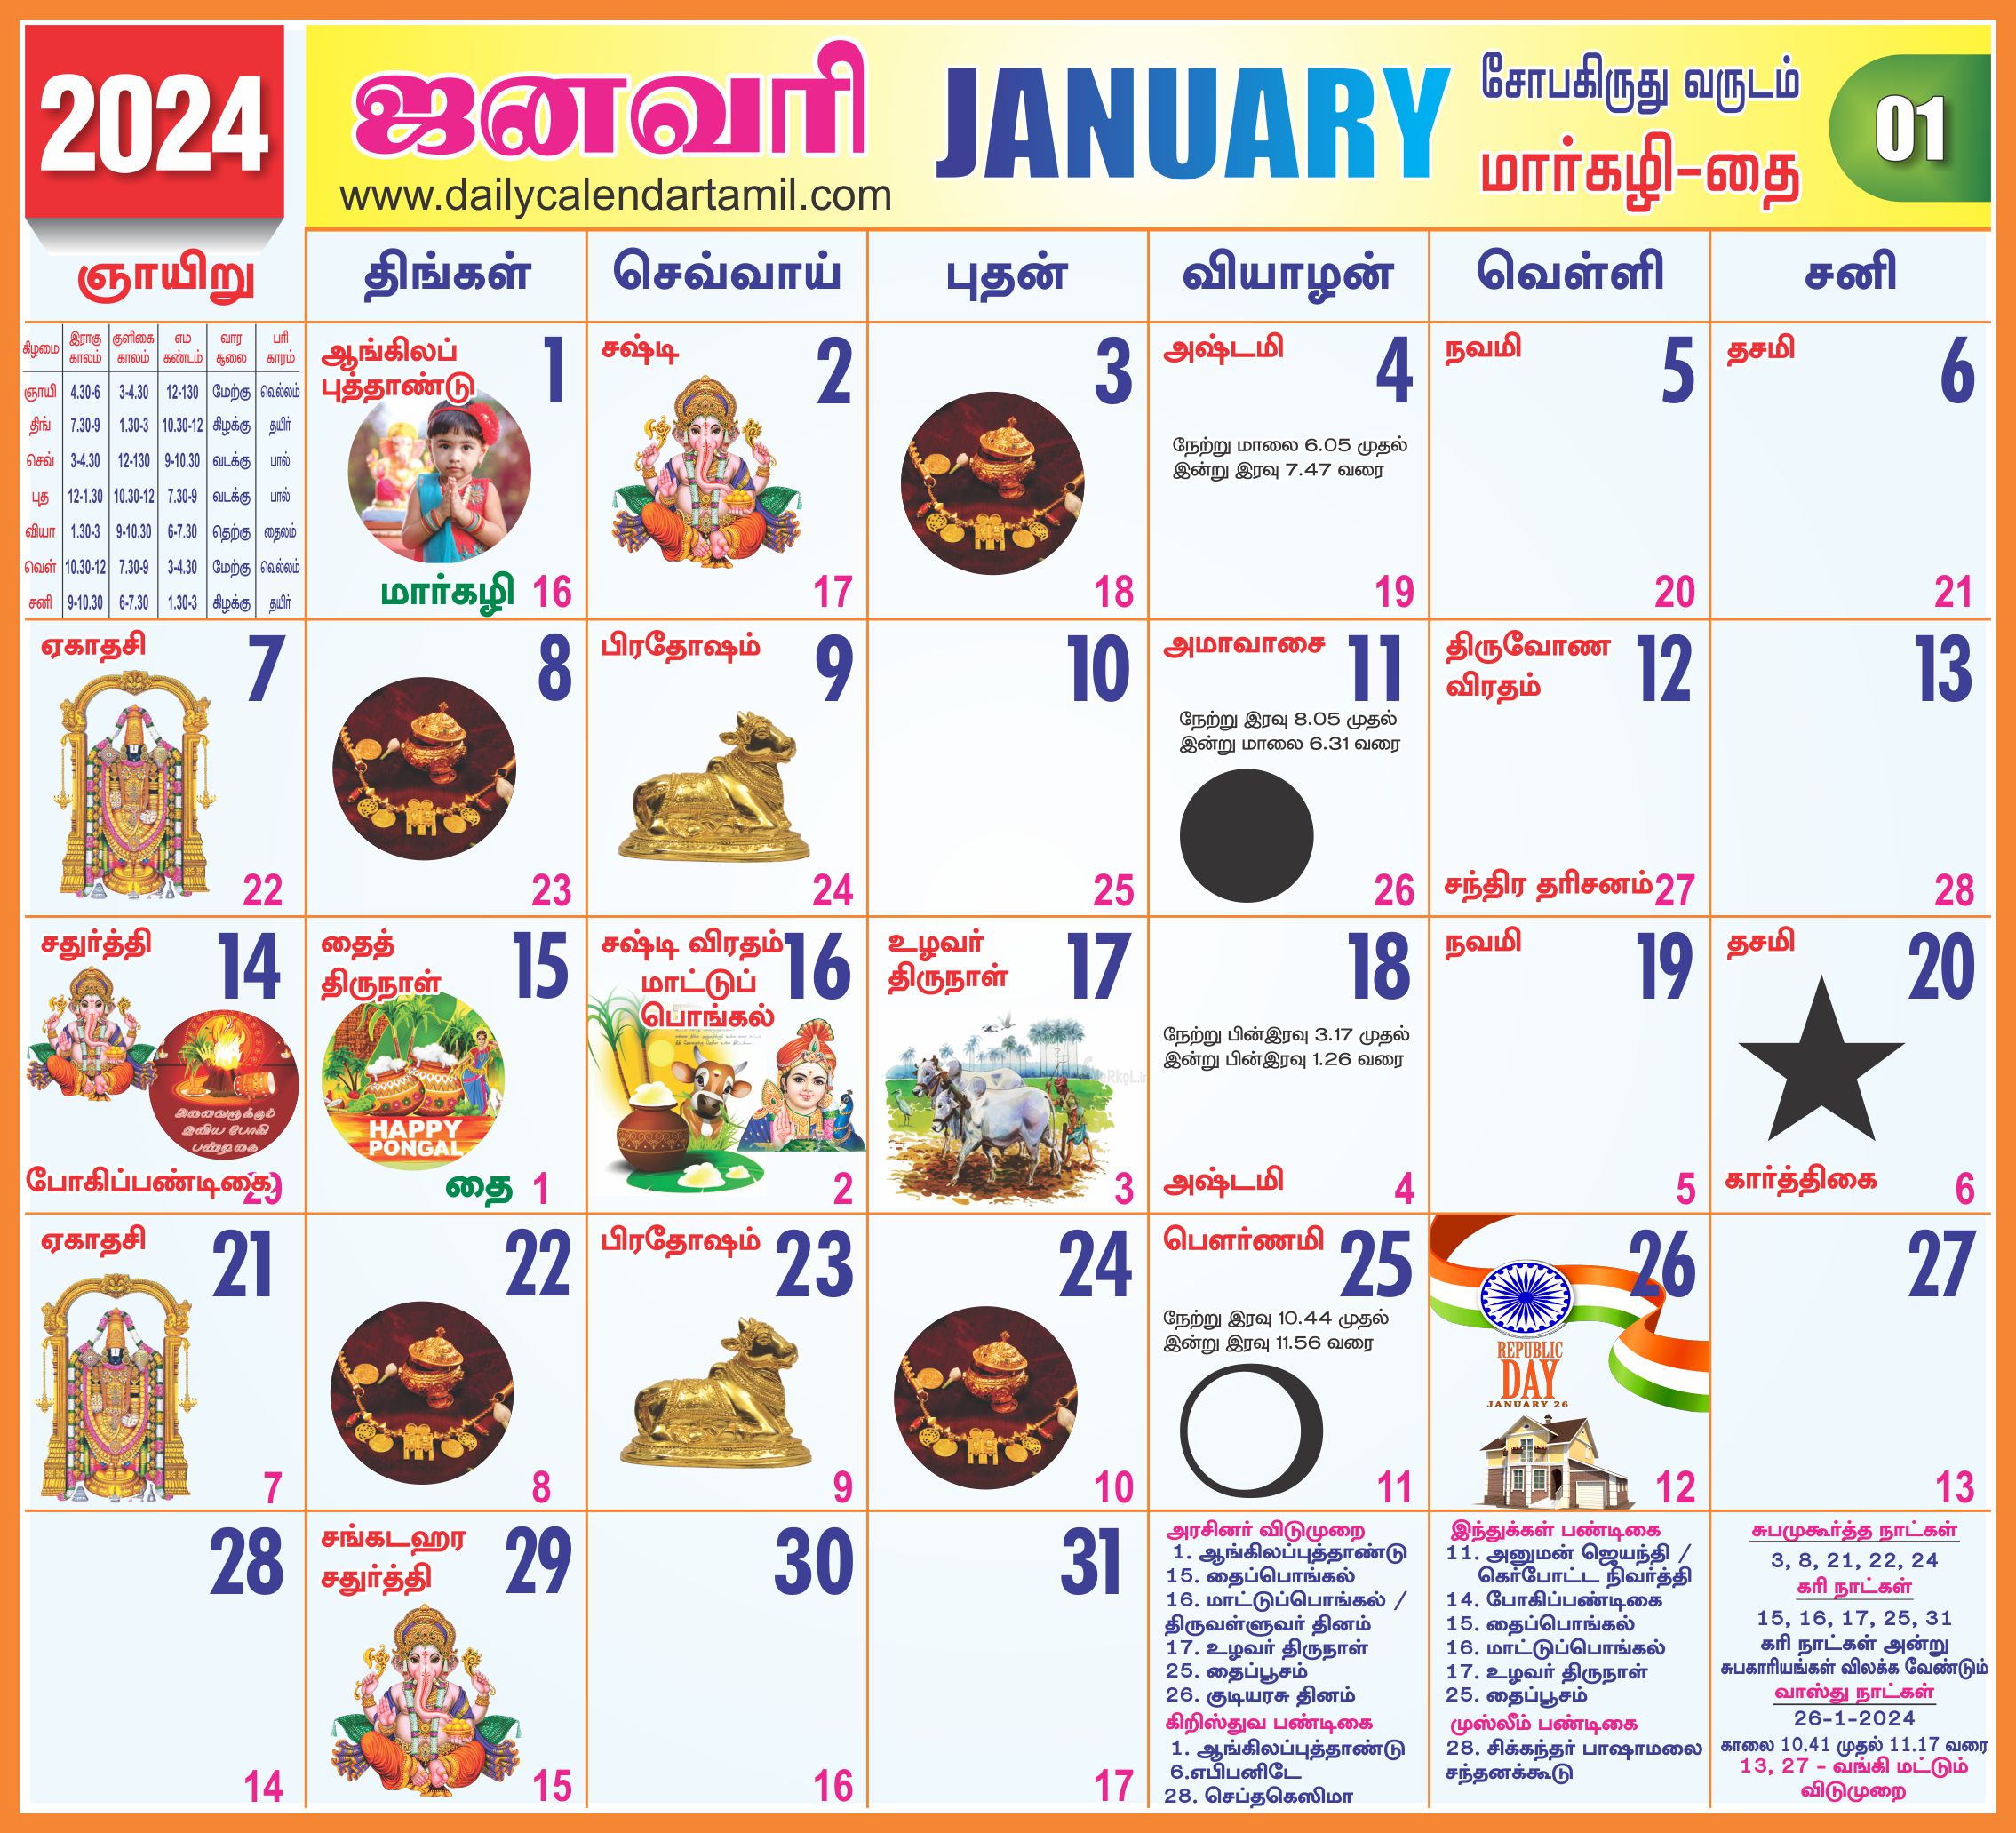 Tamil Calendar 2022 January Tamil Calendar January 2022 | தமிழ் காலண்டர் 2022